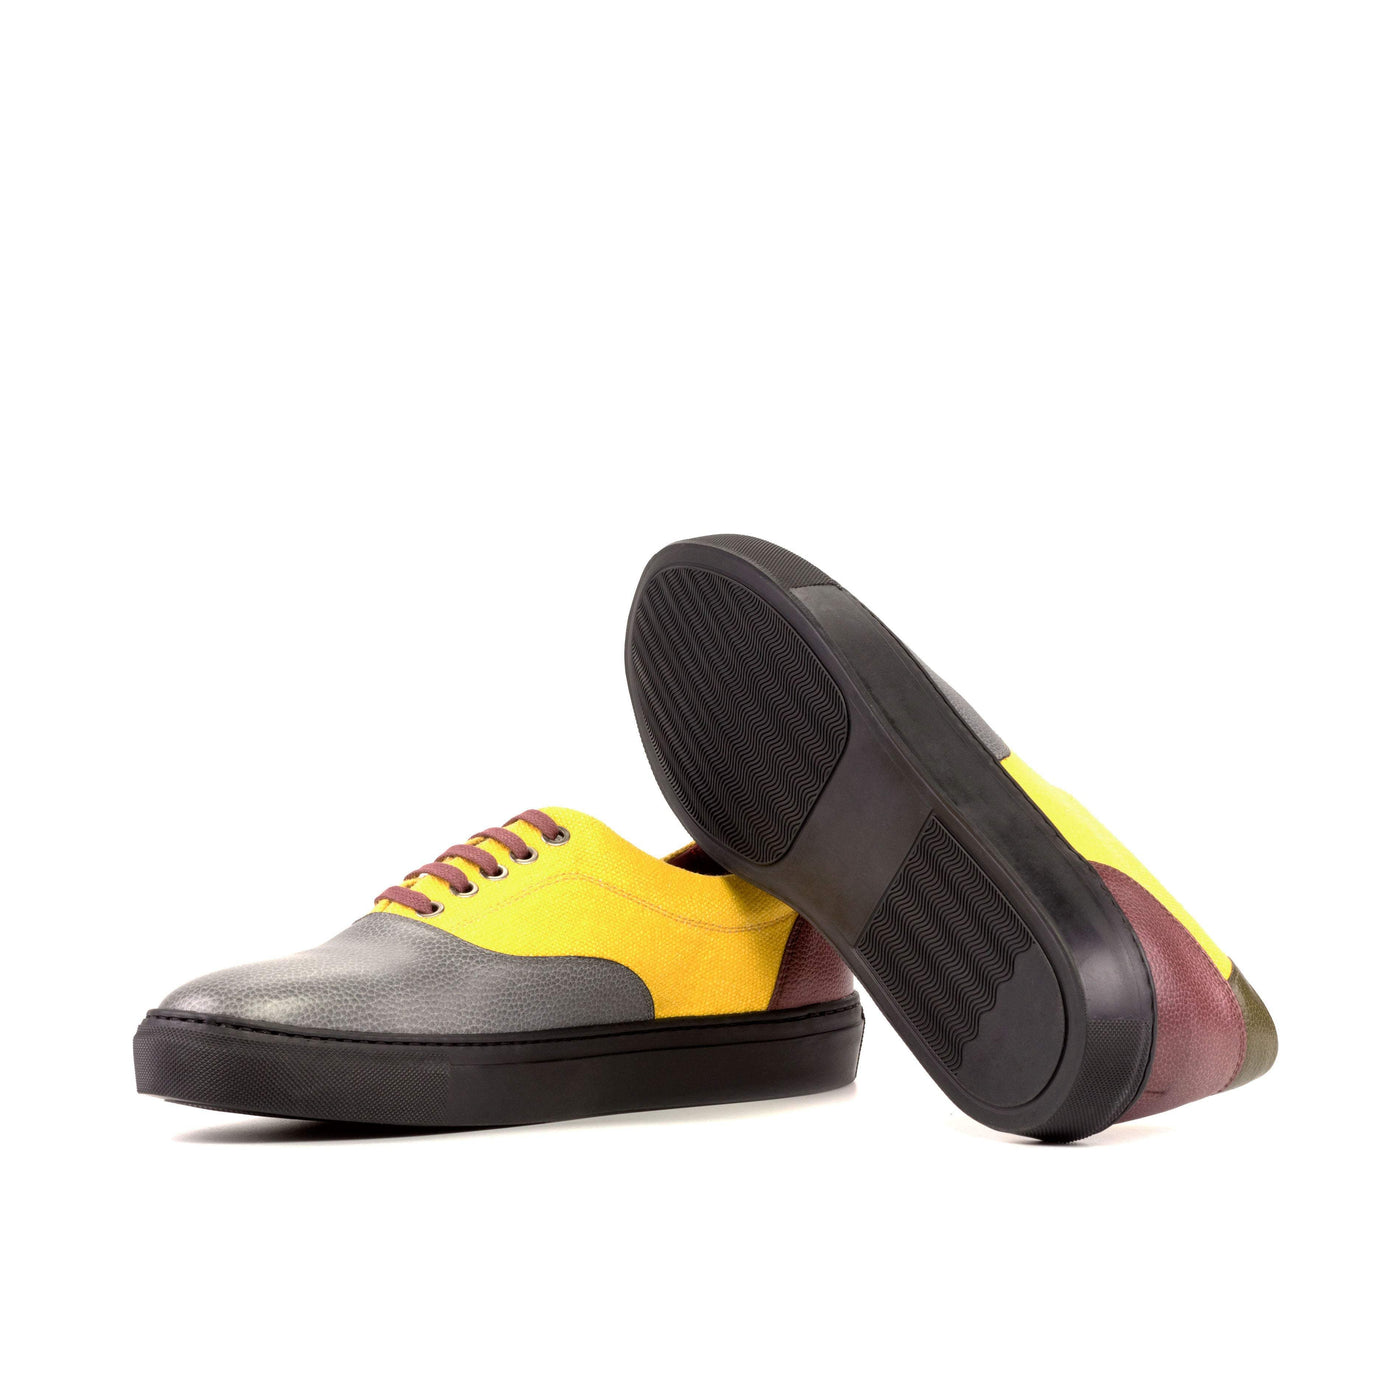 Men's Top Sider Sneakers Yellow 5219 2- MERRIMIUM